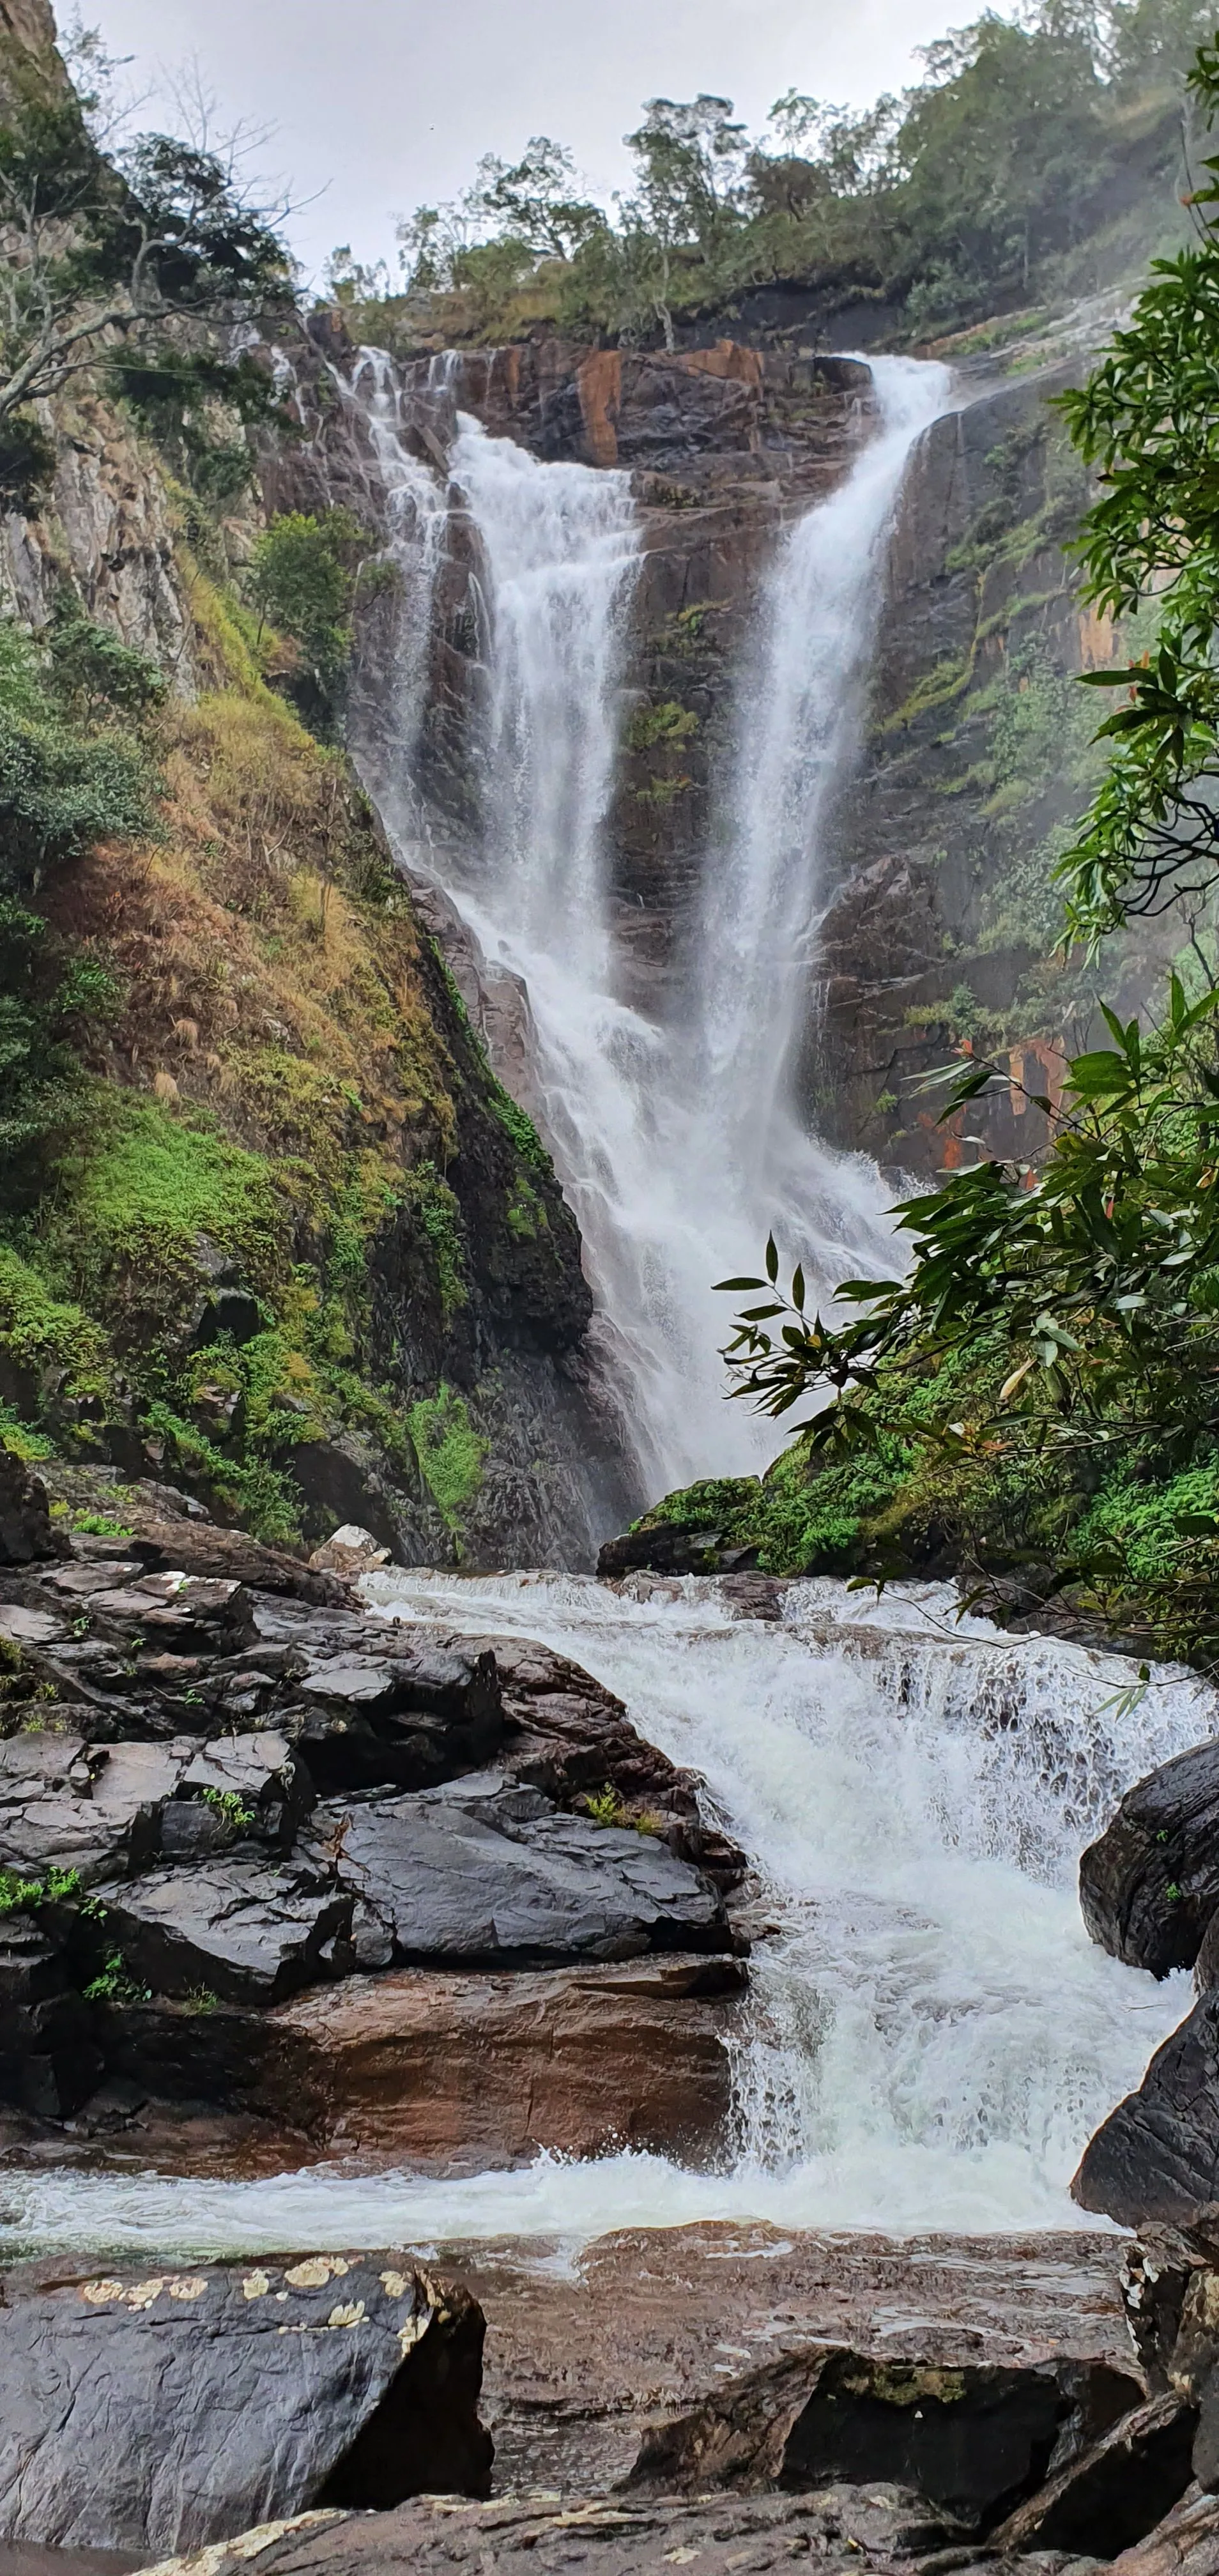 Kundalila Falls